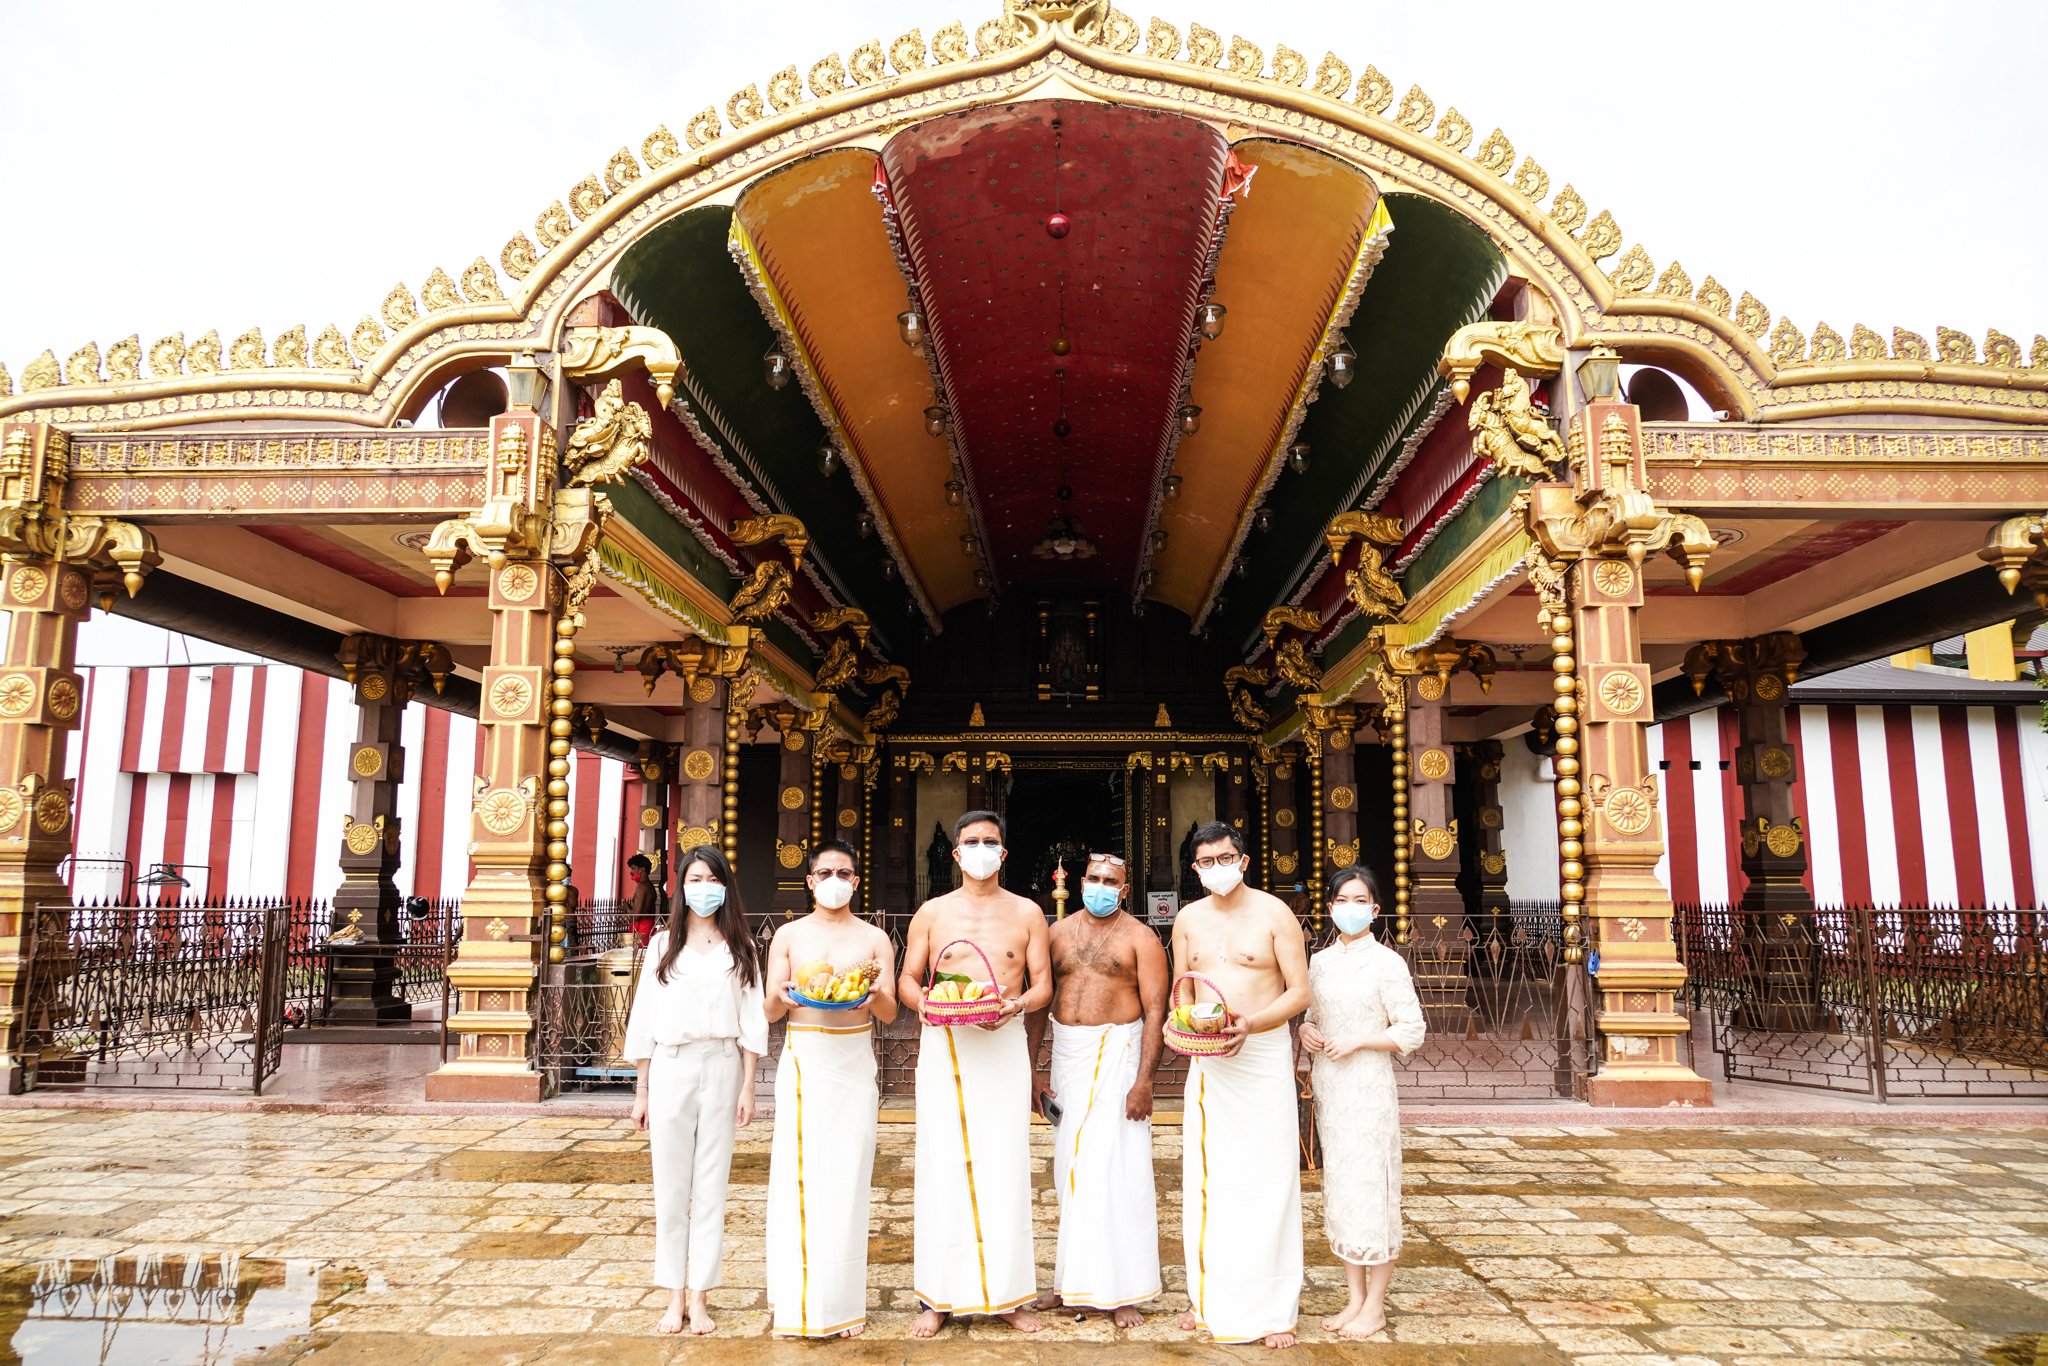 श्रीलंकामा जब चिनियाँ राजदूत धोती लगाएर मन्दिर दर्शन गर्न पुगे